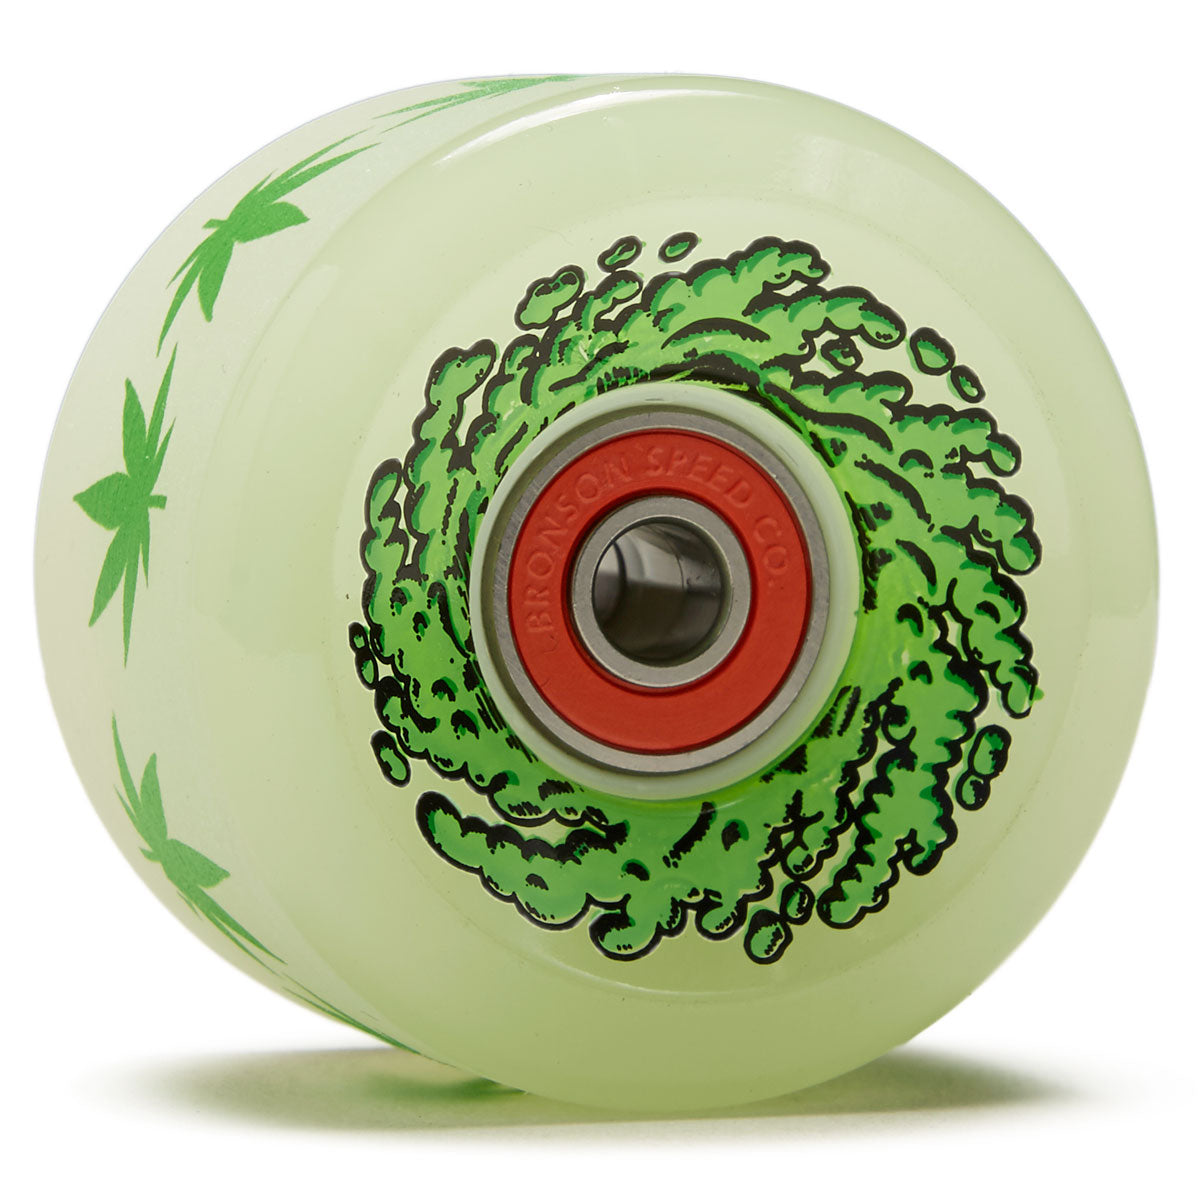 Slime Balls - Light Ups OG Slime Glow in The Dark 78A Wheels (60mm)